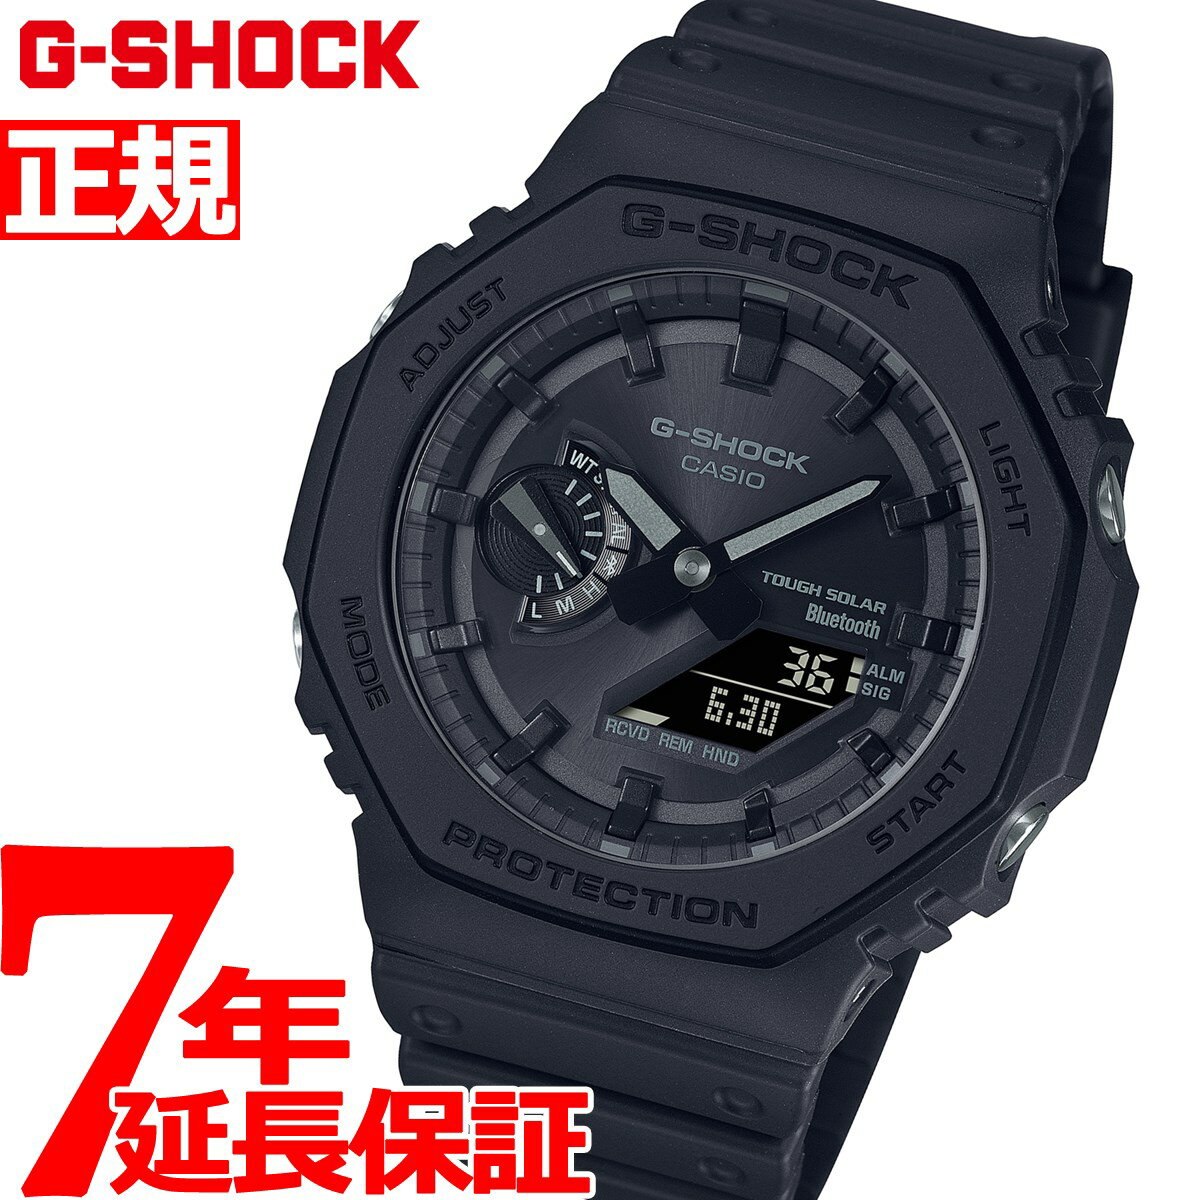 腕時計, メンズ腕時計 722000OFF12420:0012111:59G-S HOCK G CASIO GA-B2100-1A1JF 2022 